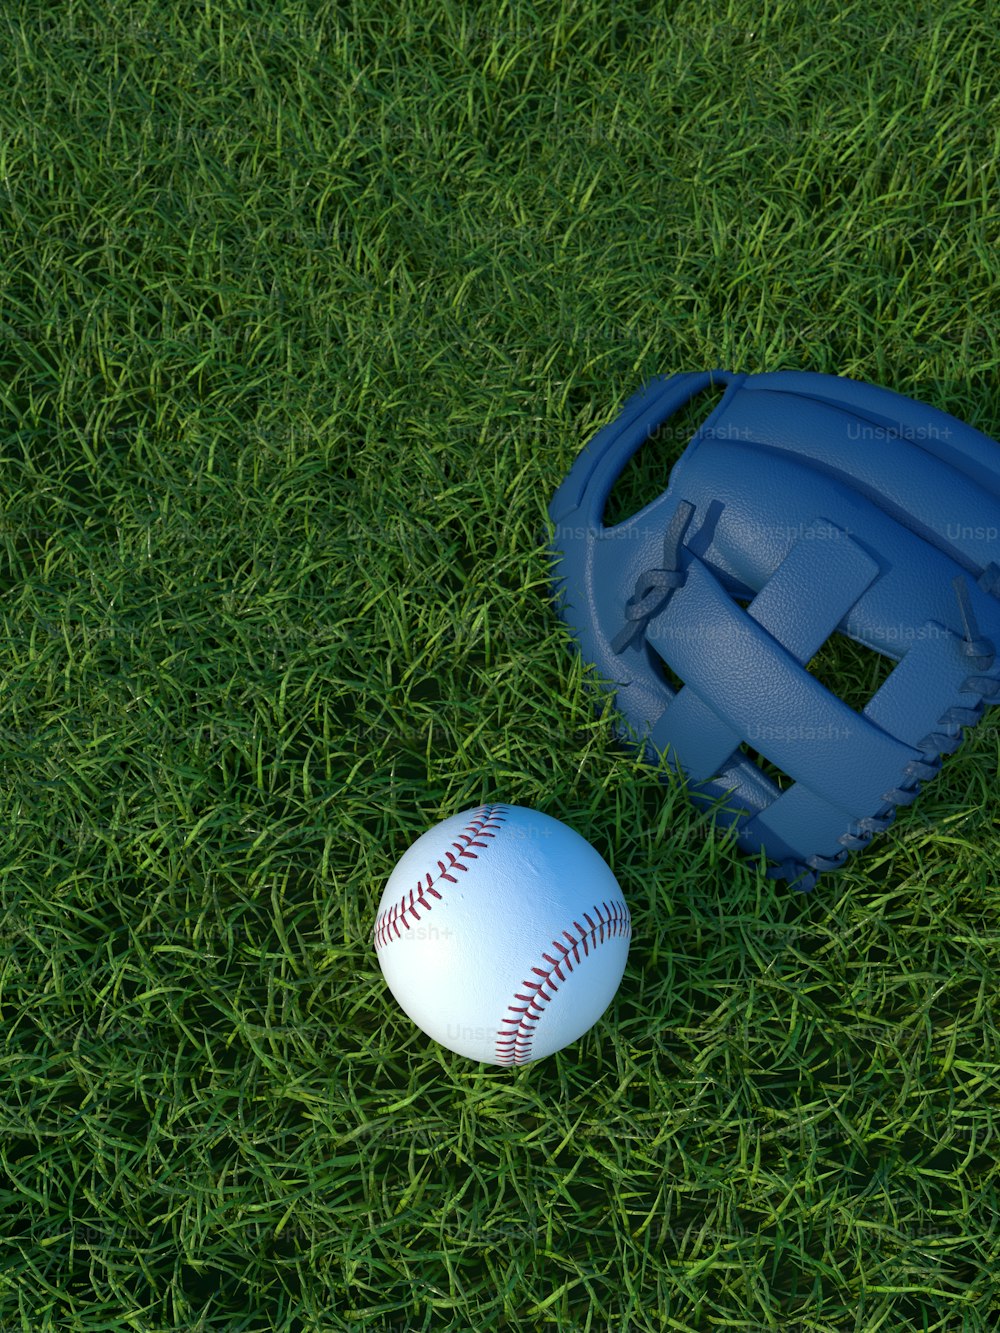 芝生の上の野球とキャッチャーミット